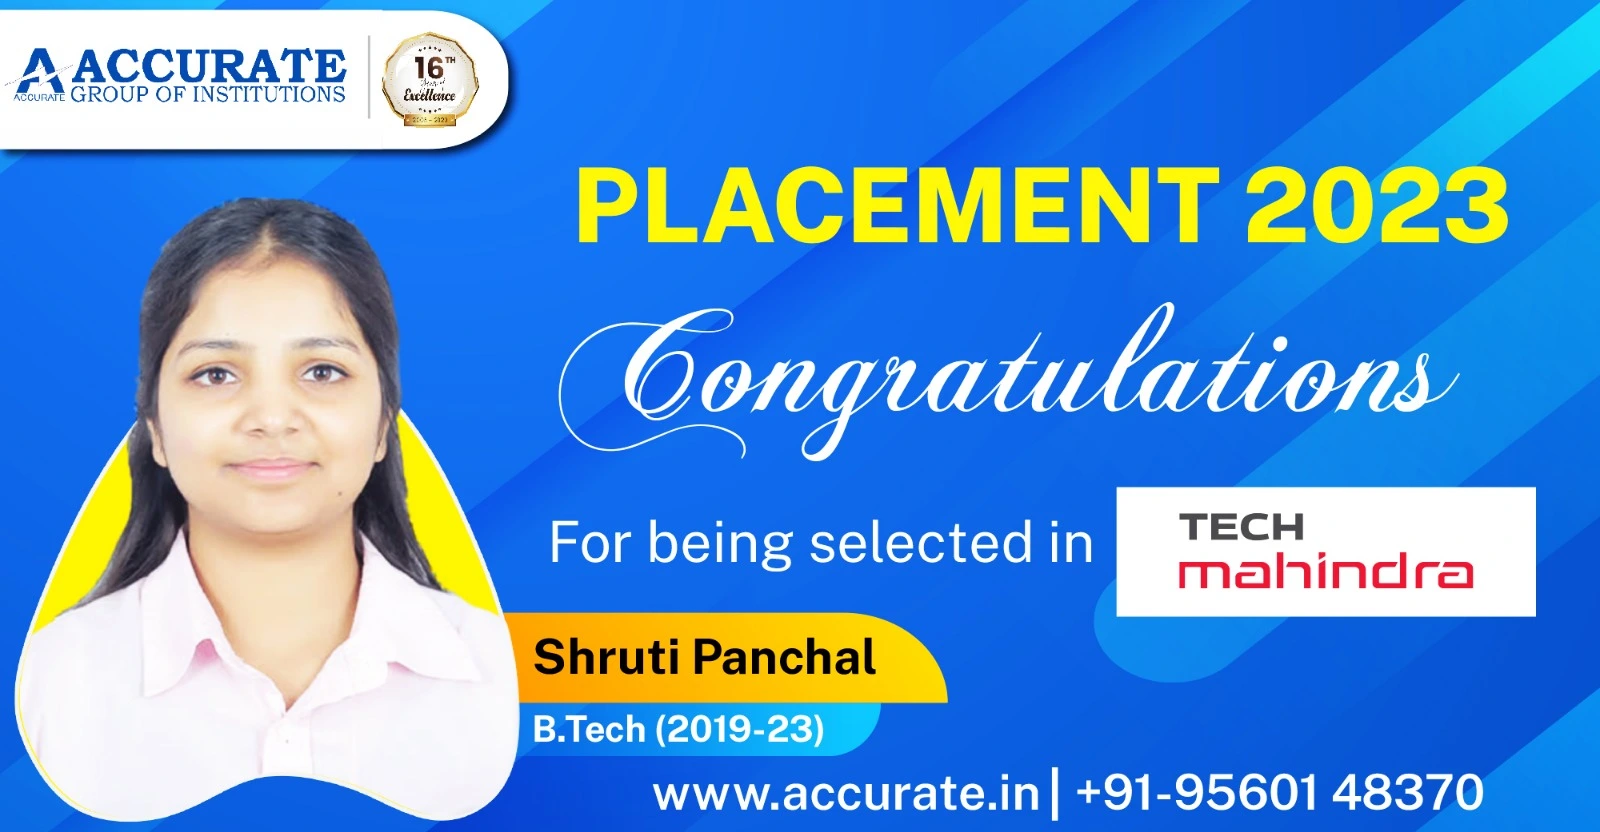 Recent Placement 2023 - Shruti Panchal